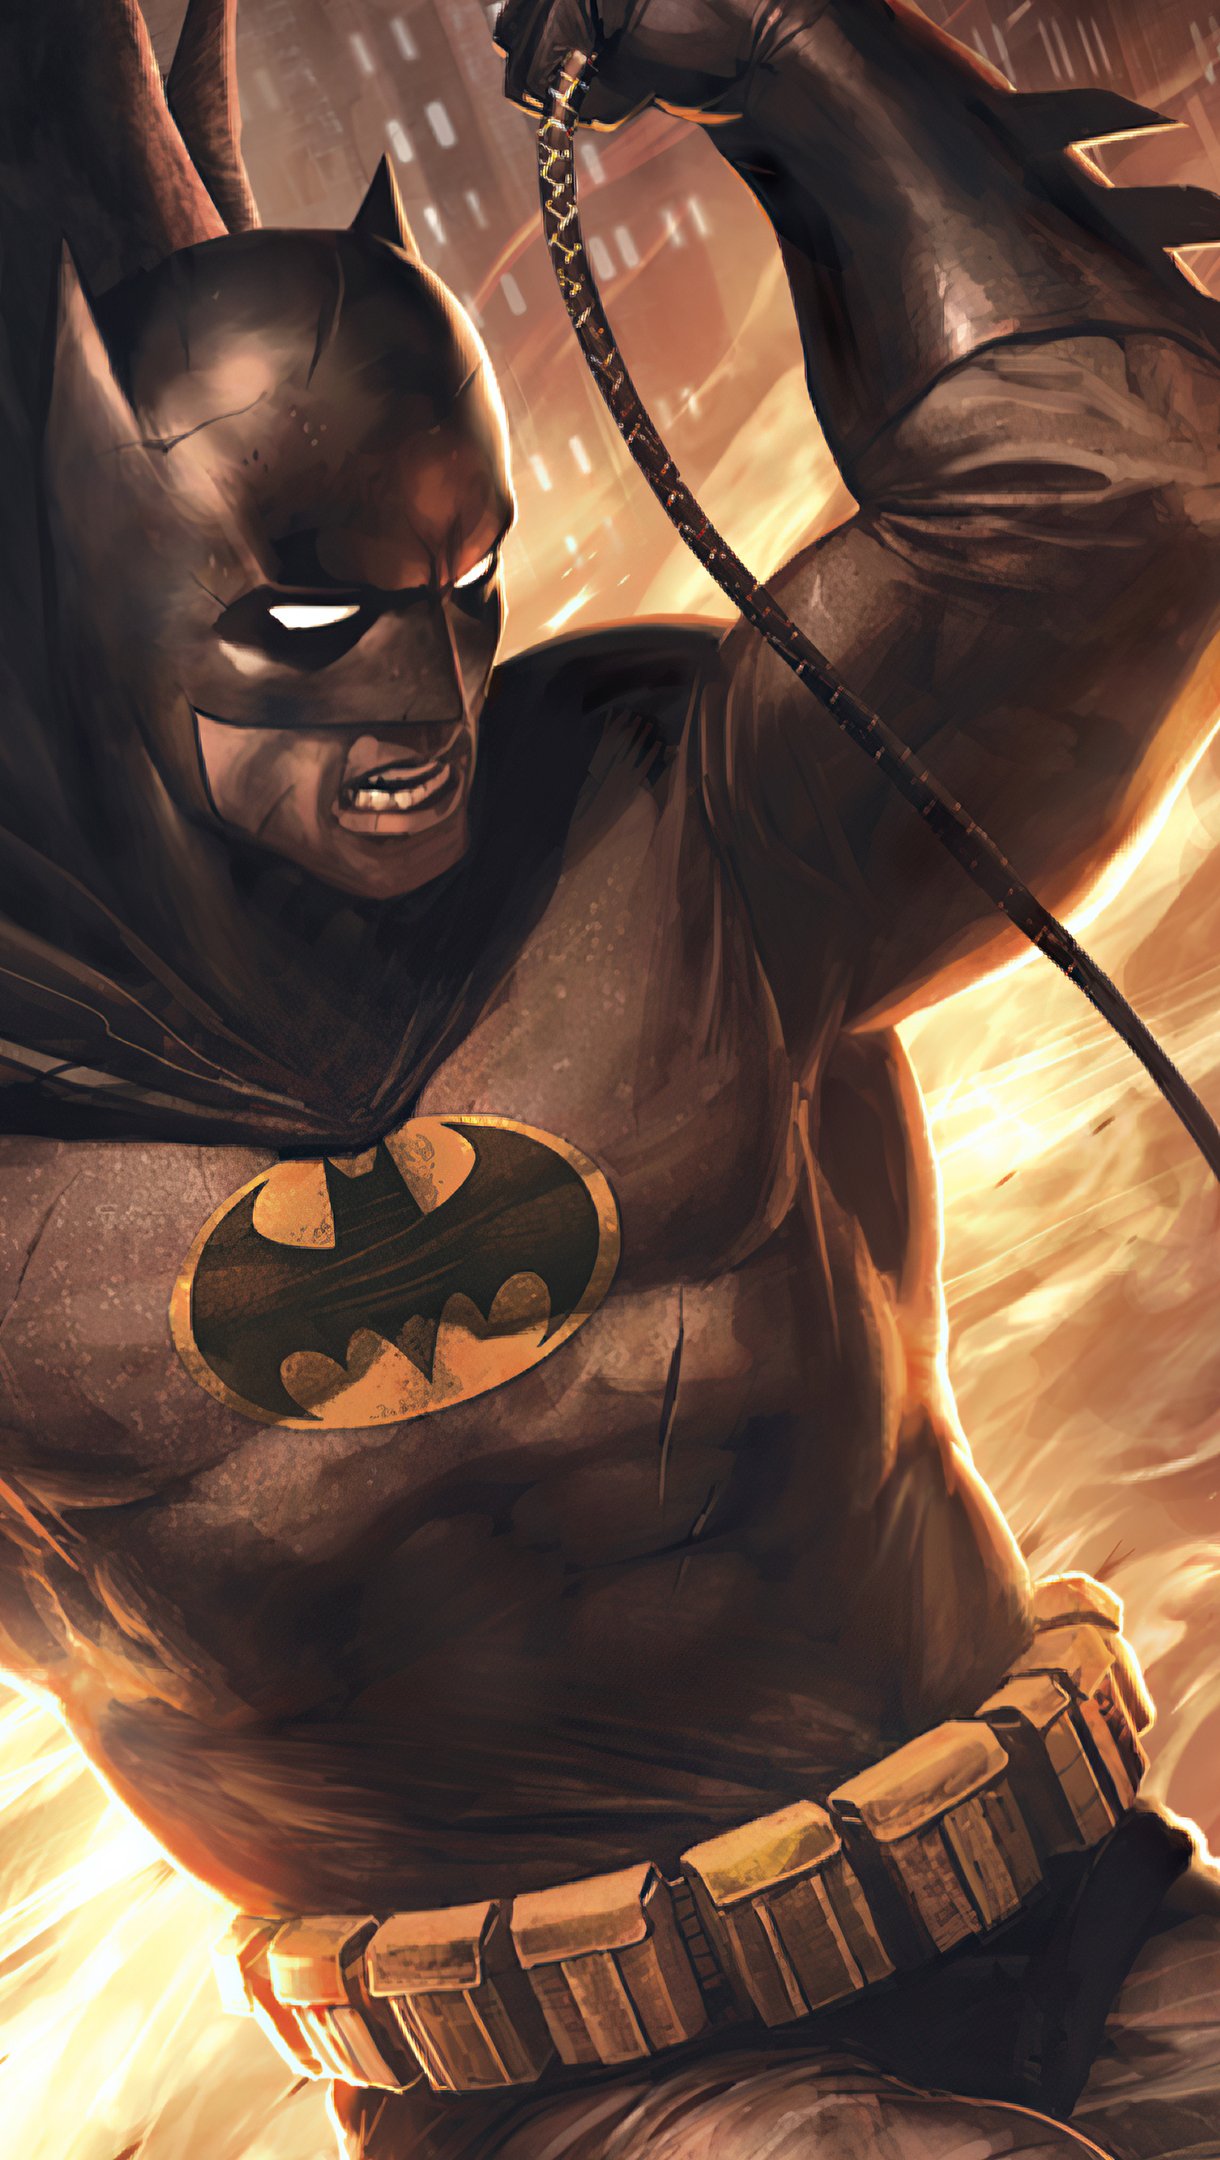 Batman The Dark Knight Returns in City Wallpaper 4k Ultra HD ID:6008